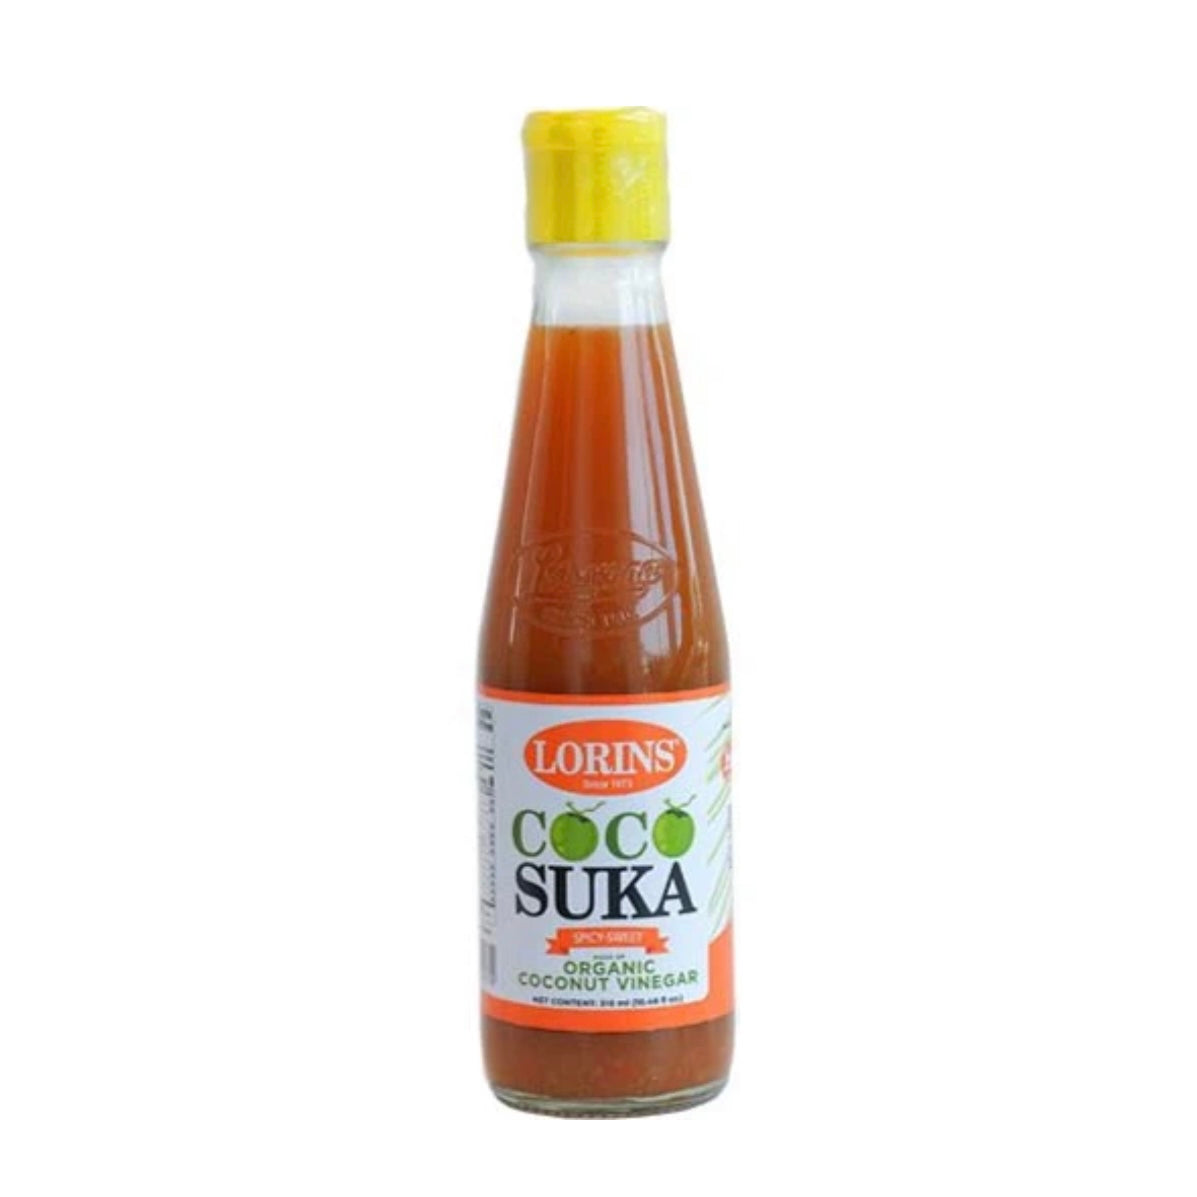 Lorins Coco Suka Spicy-Sweet Vinegar